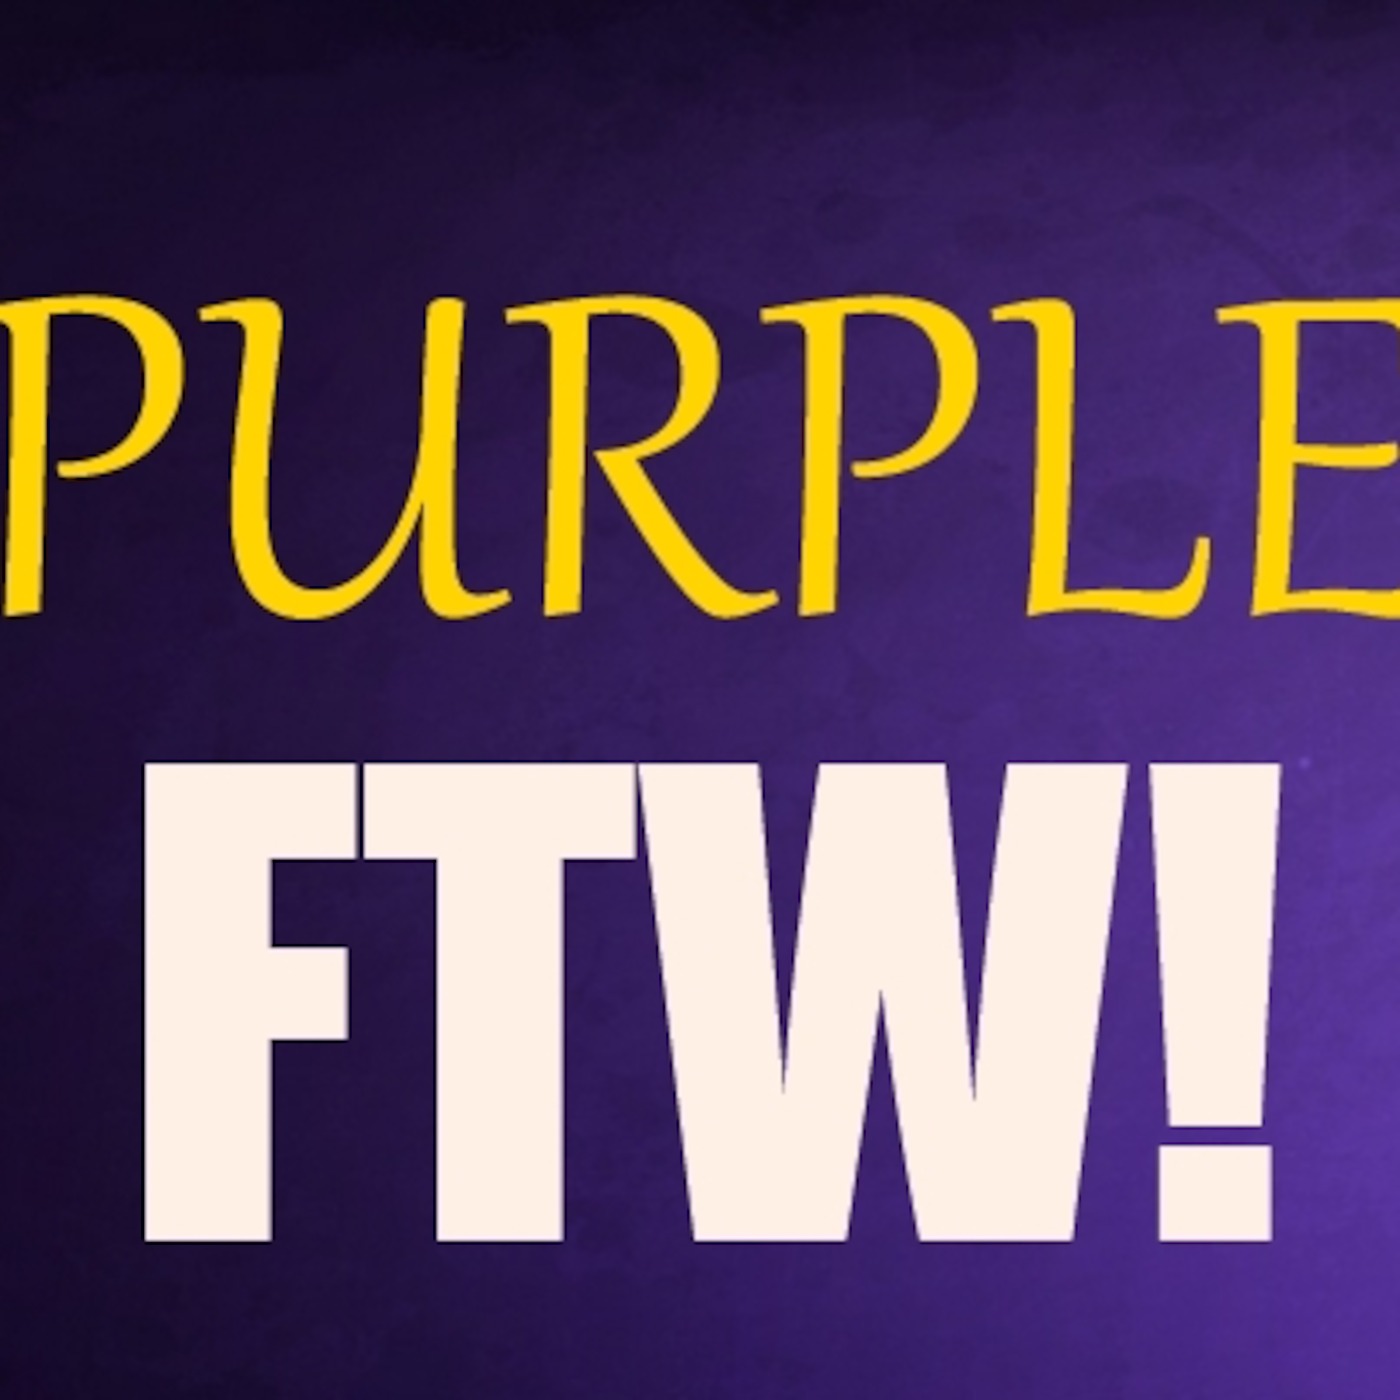 PurpleFTW!